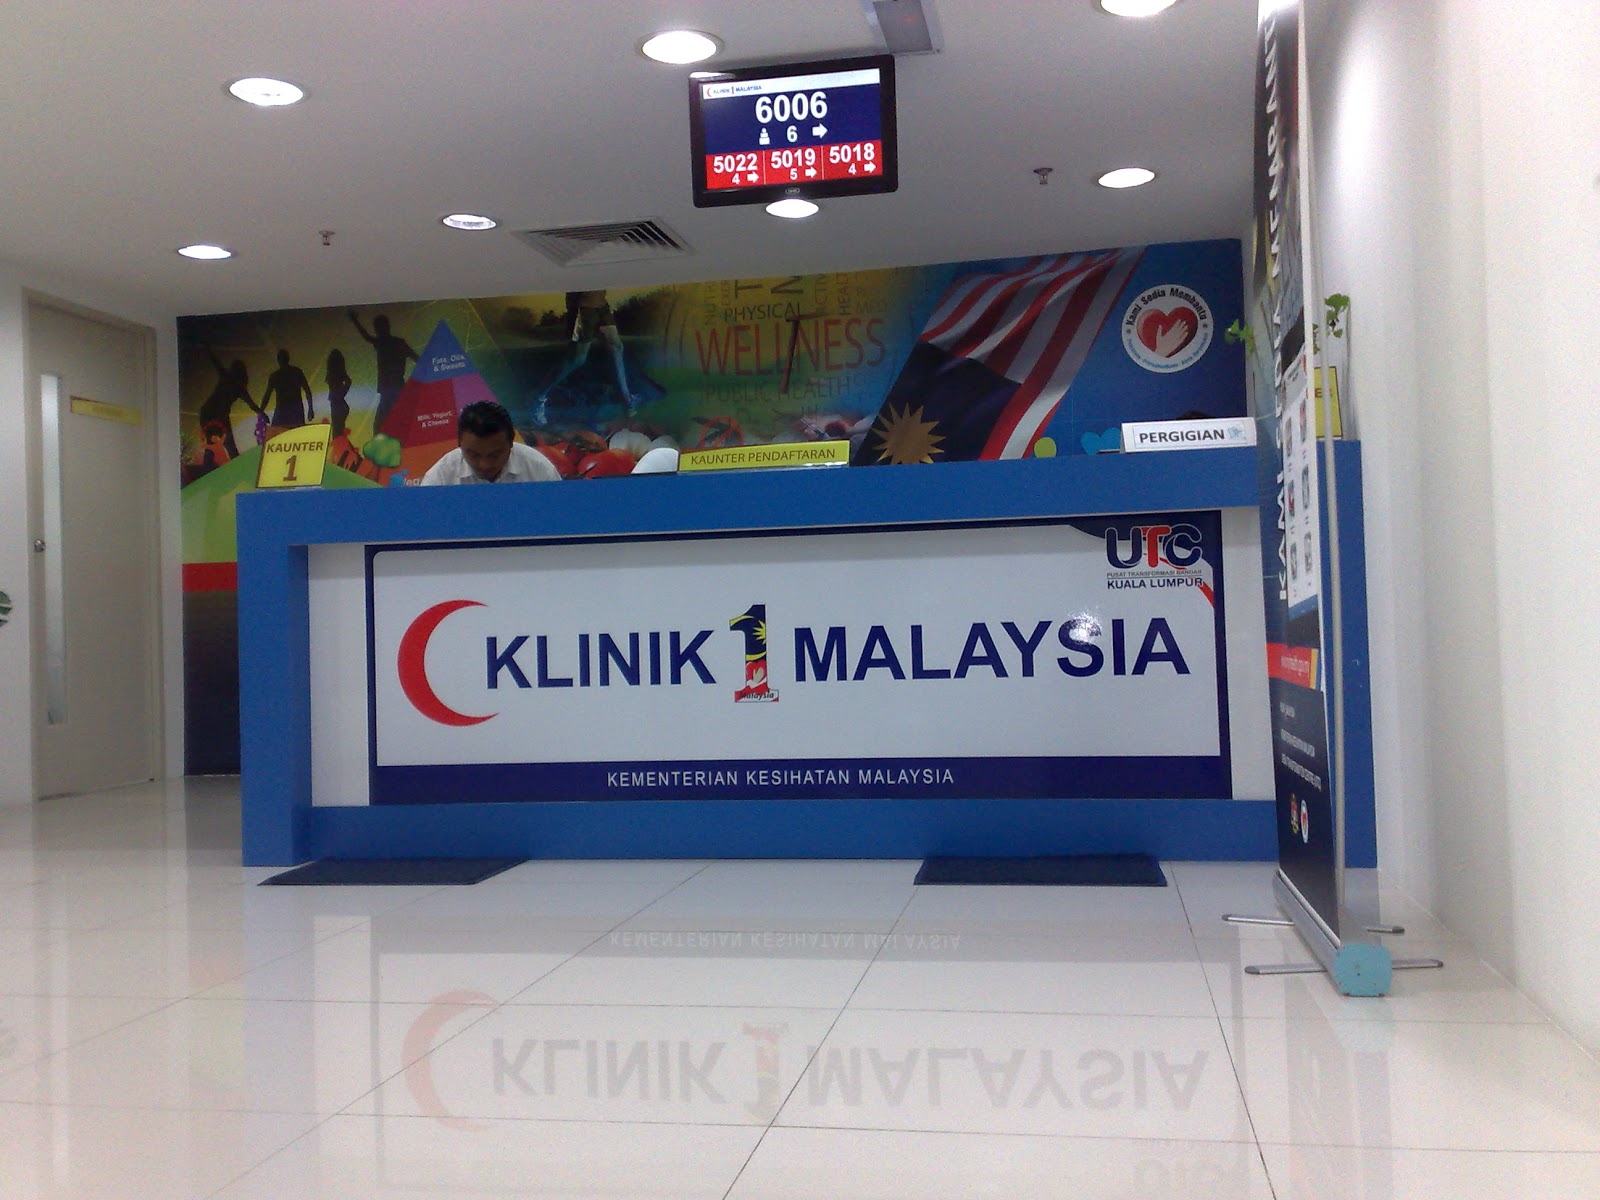 Klinik Malaysia